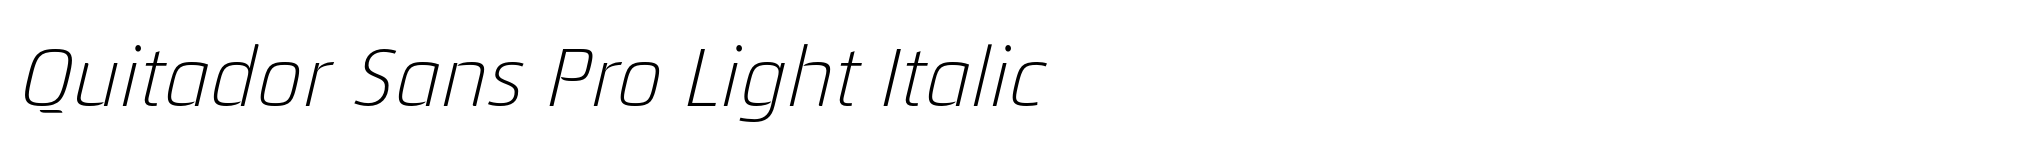 Quitador Sans Pro Light Italic image